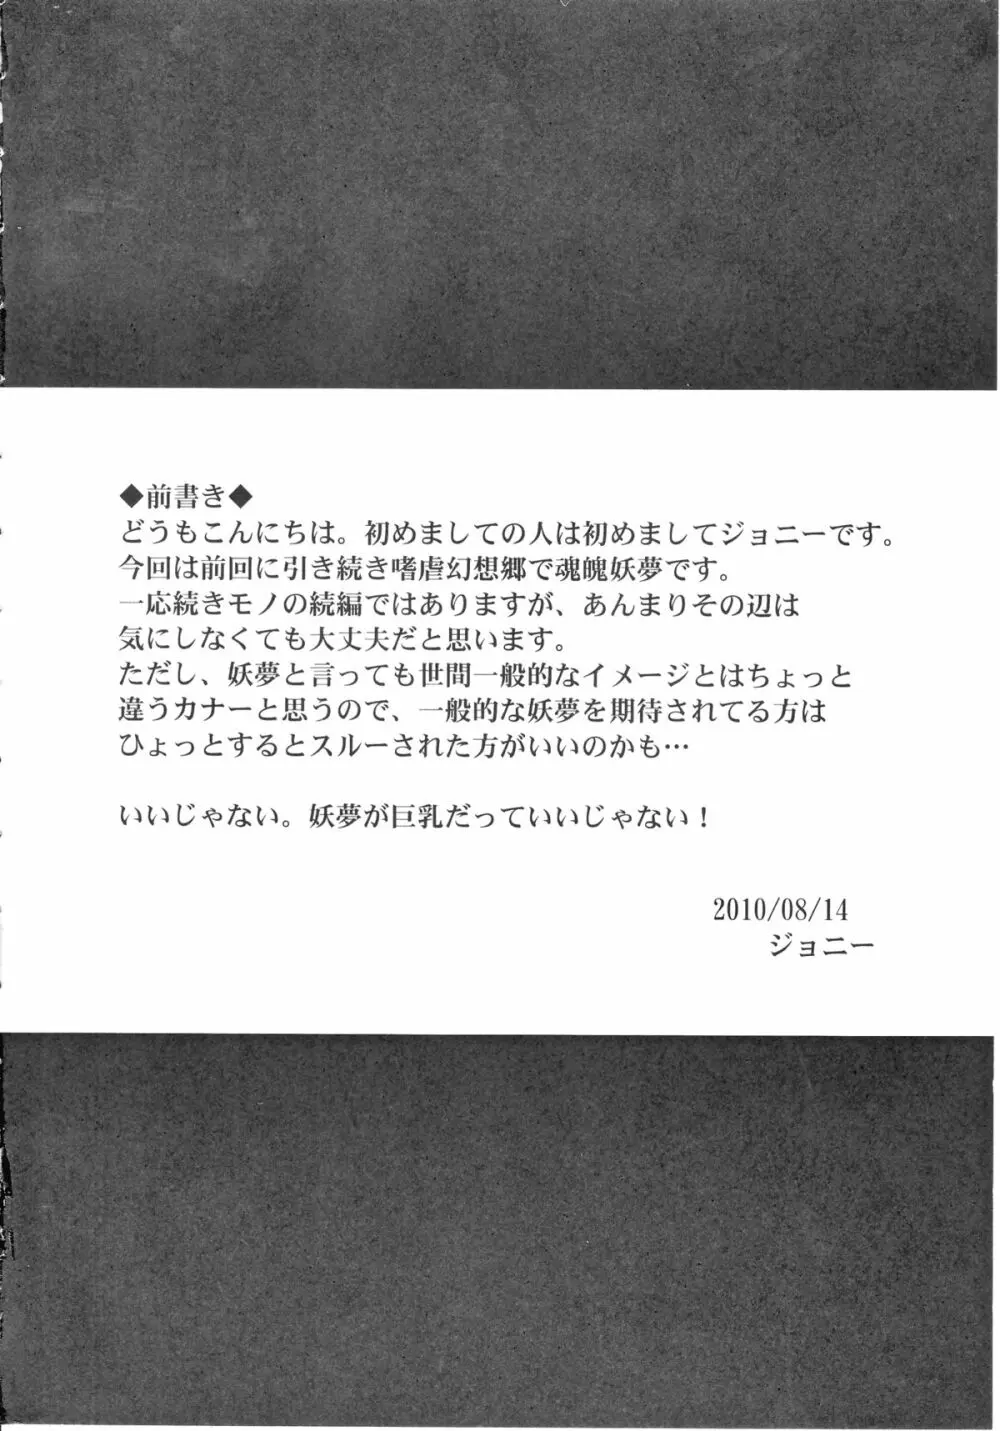 嗜虐幻想郷 -魂魄 妖夢- - page3